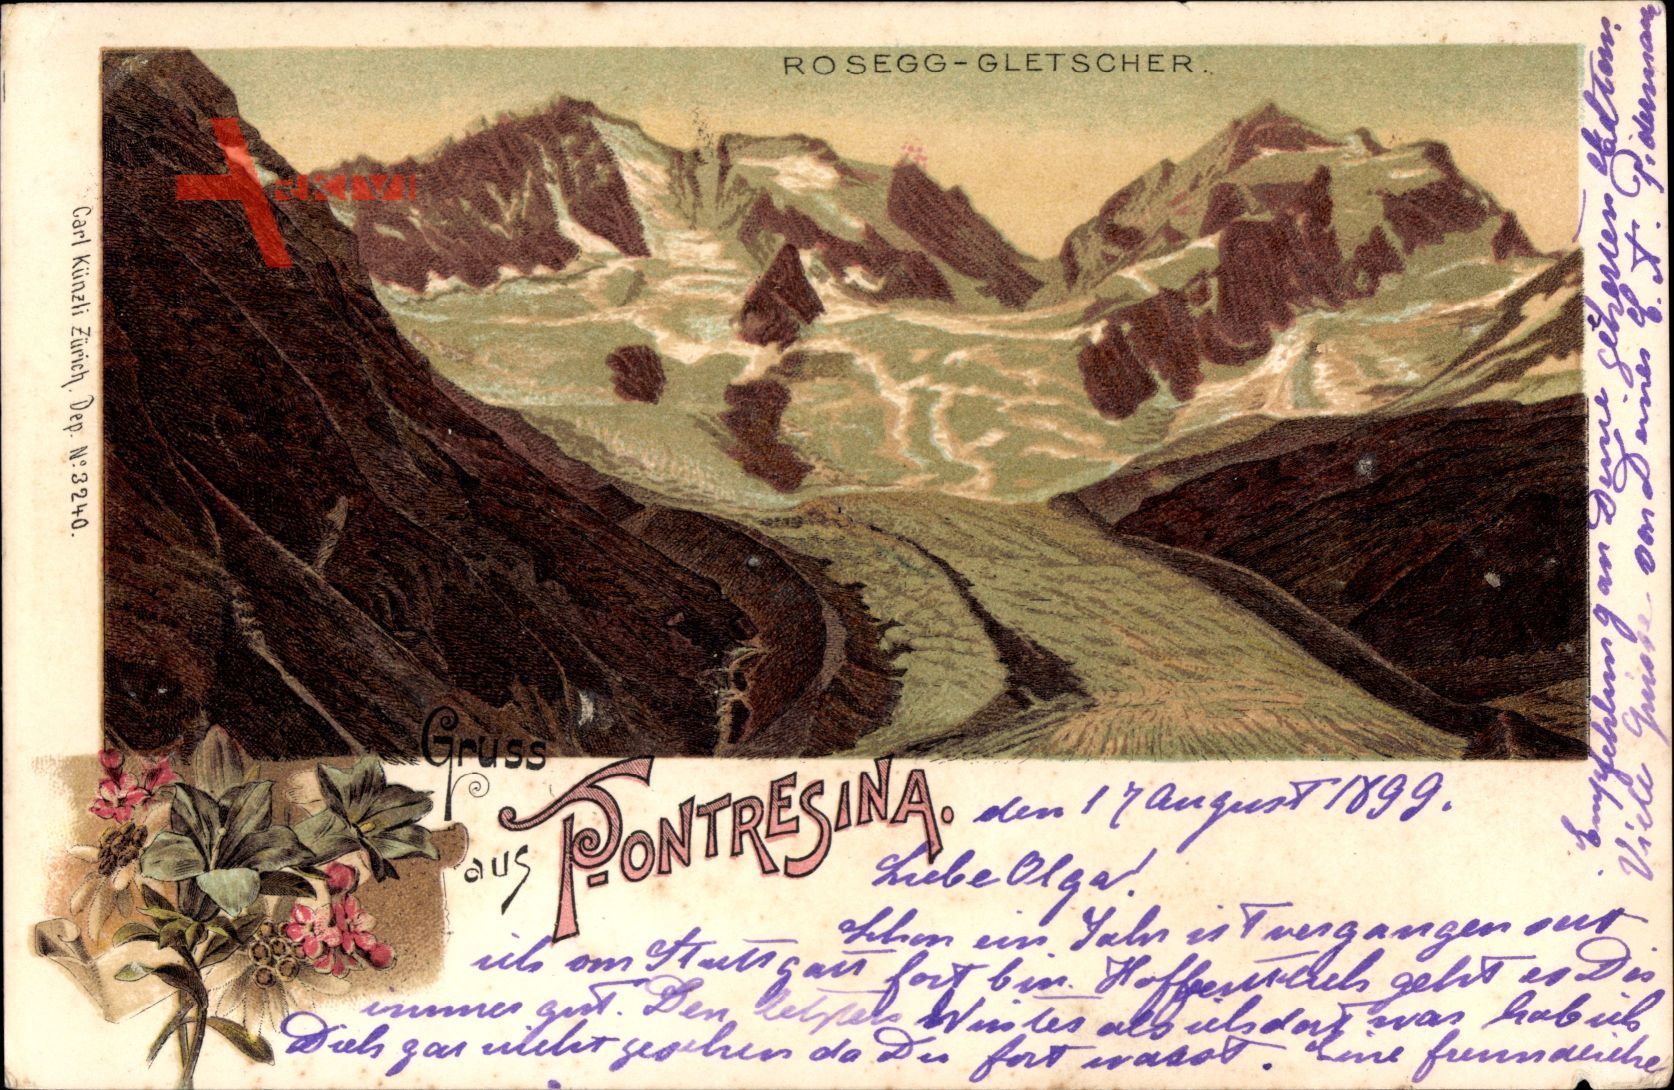 Pontresina Kt. Graubünden Schweiz, Rosegg Gletscher, Panorama